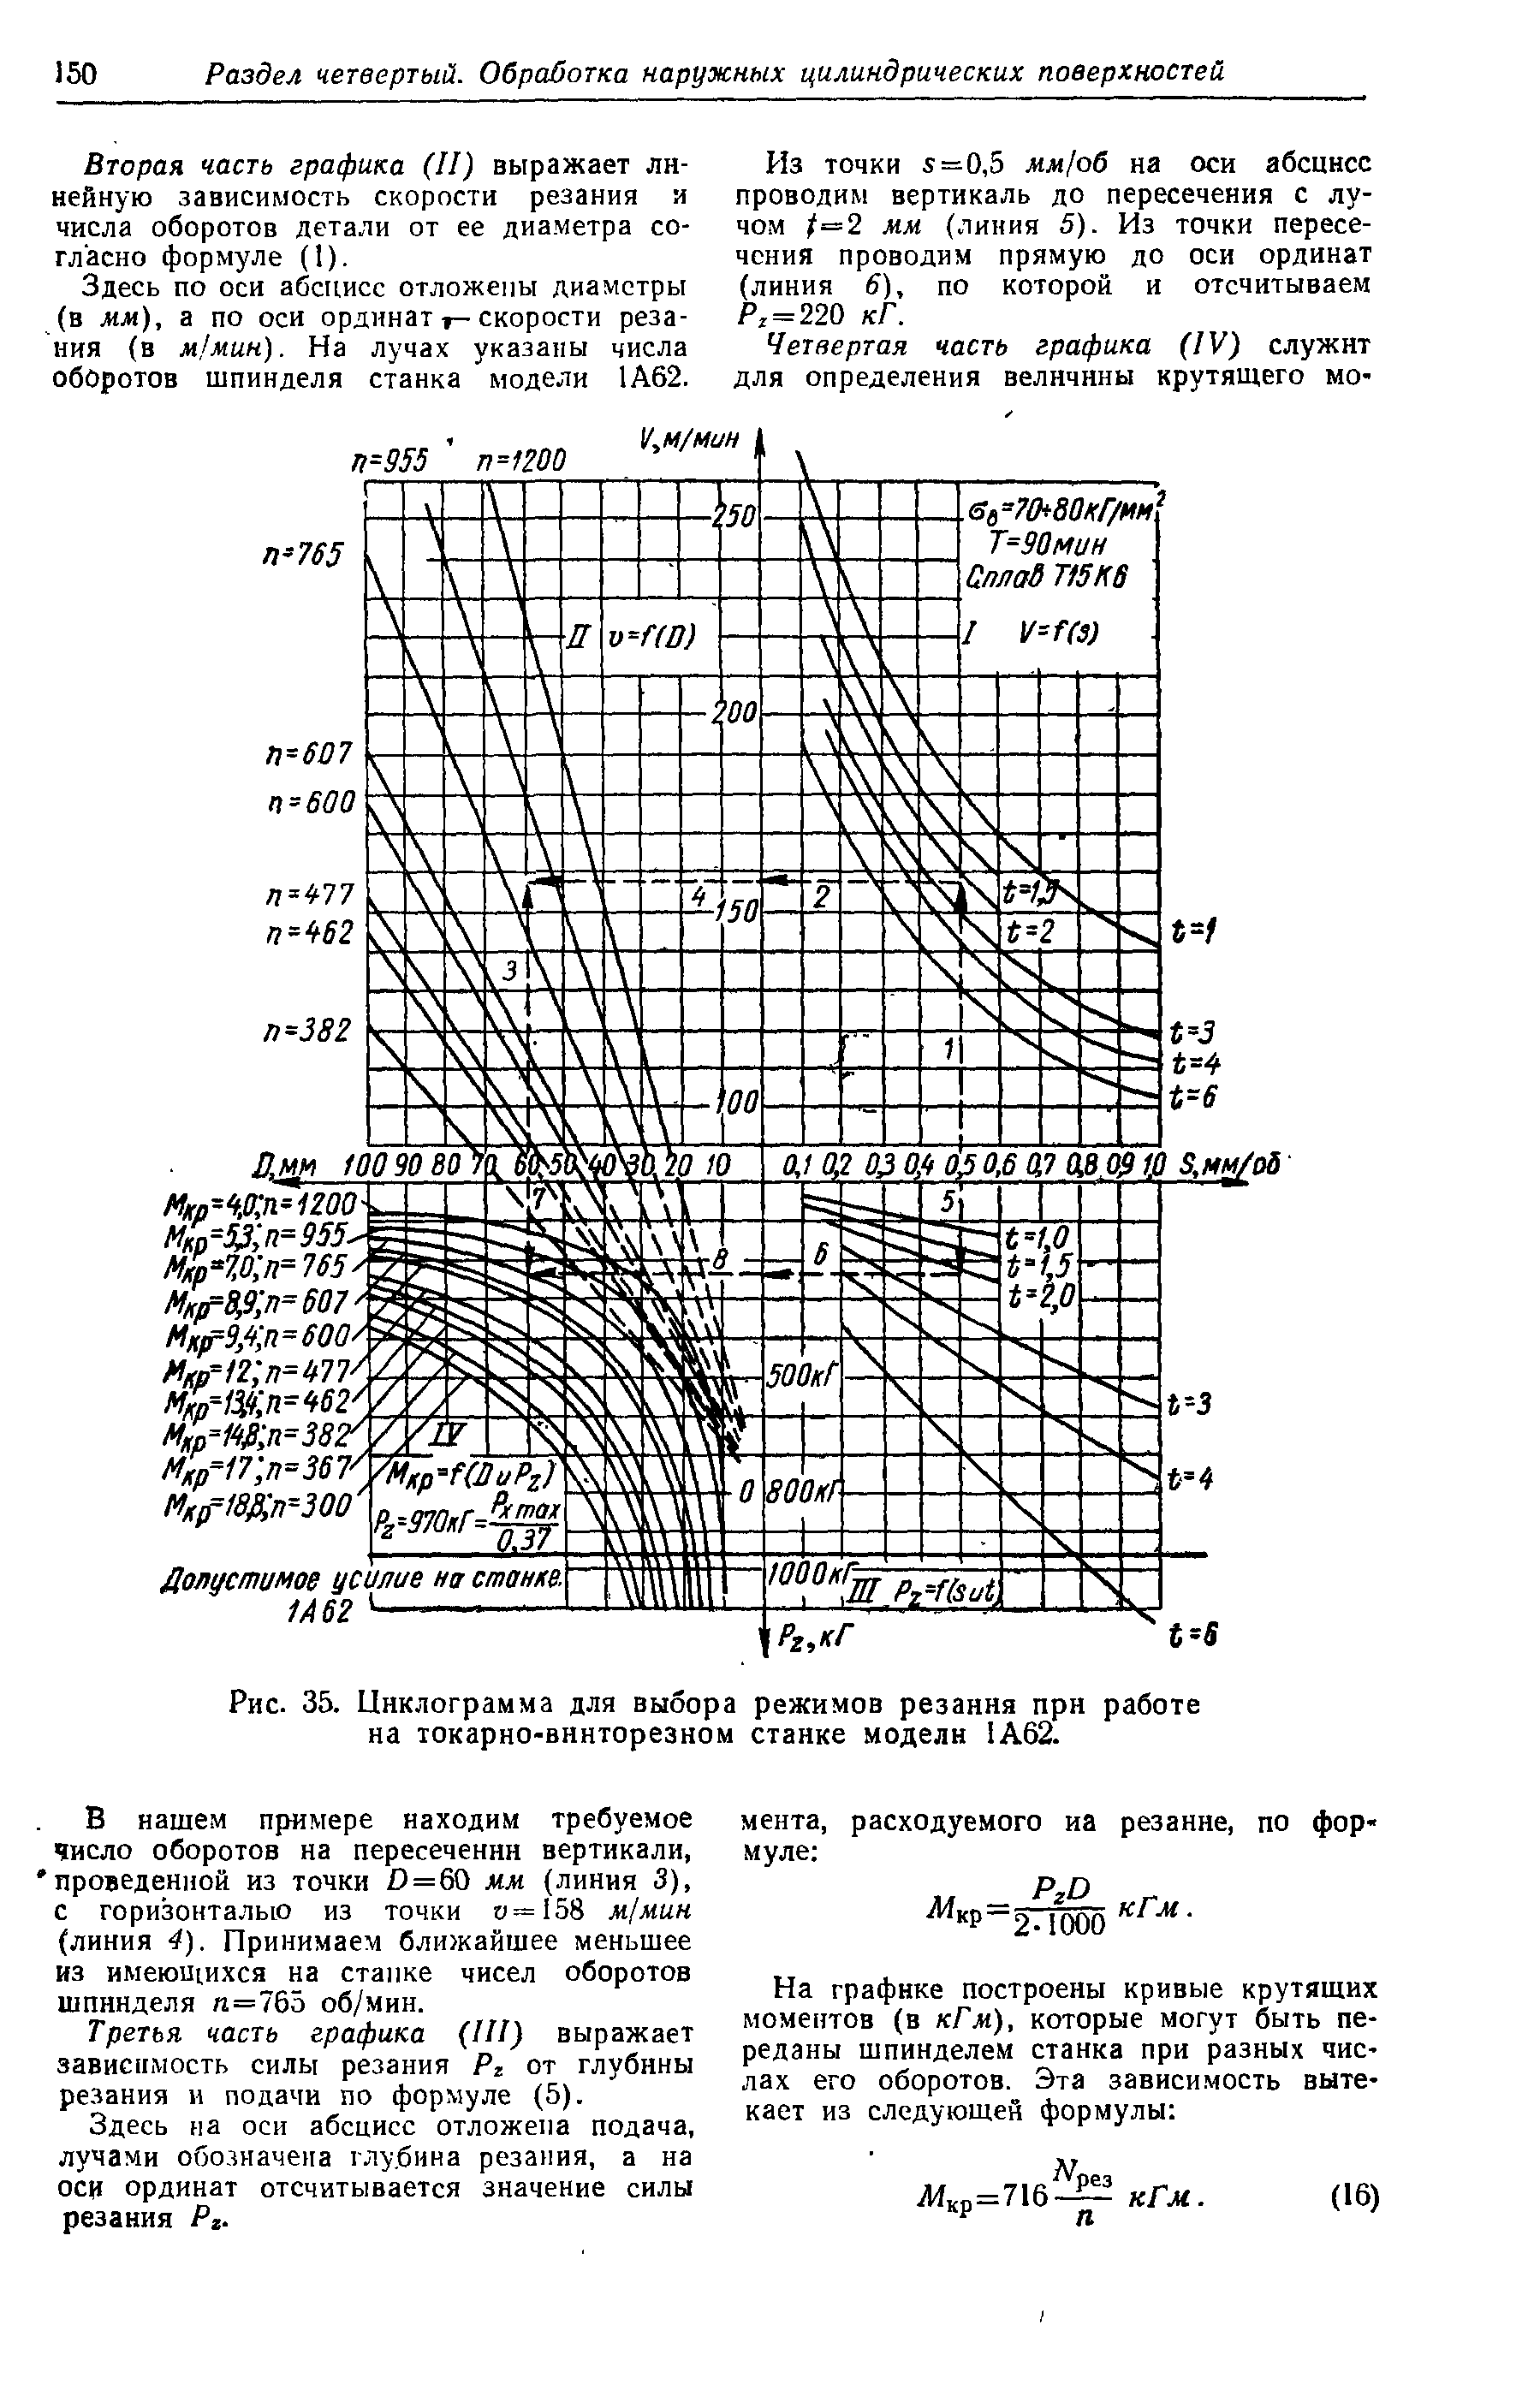 Рис. 35. Циклограмма для выбора режимов резаиия при работе на токарно-винторезном стайке модели 1А62.
